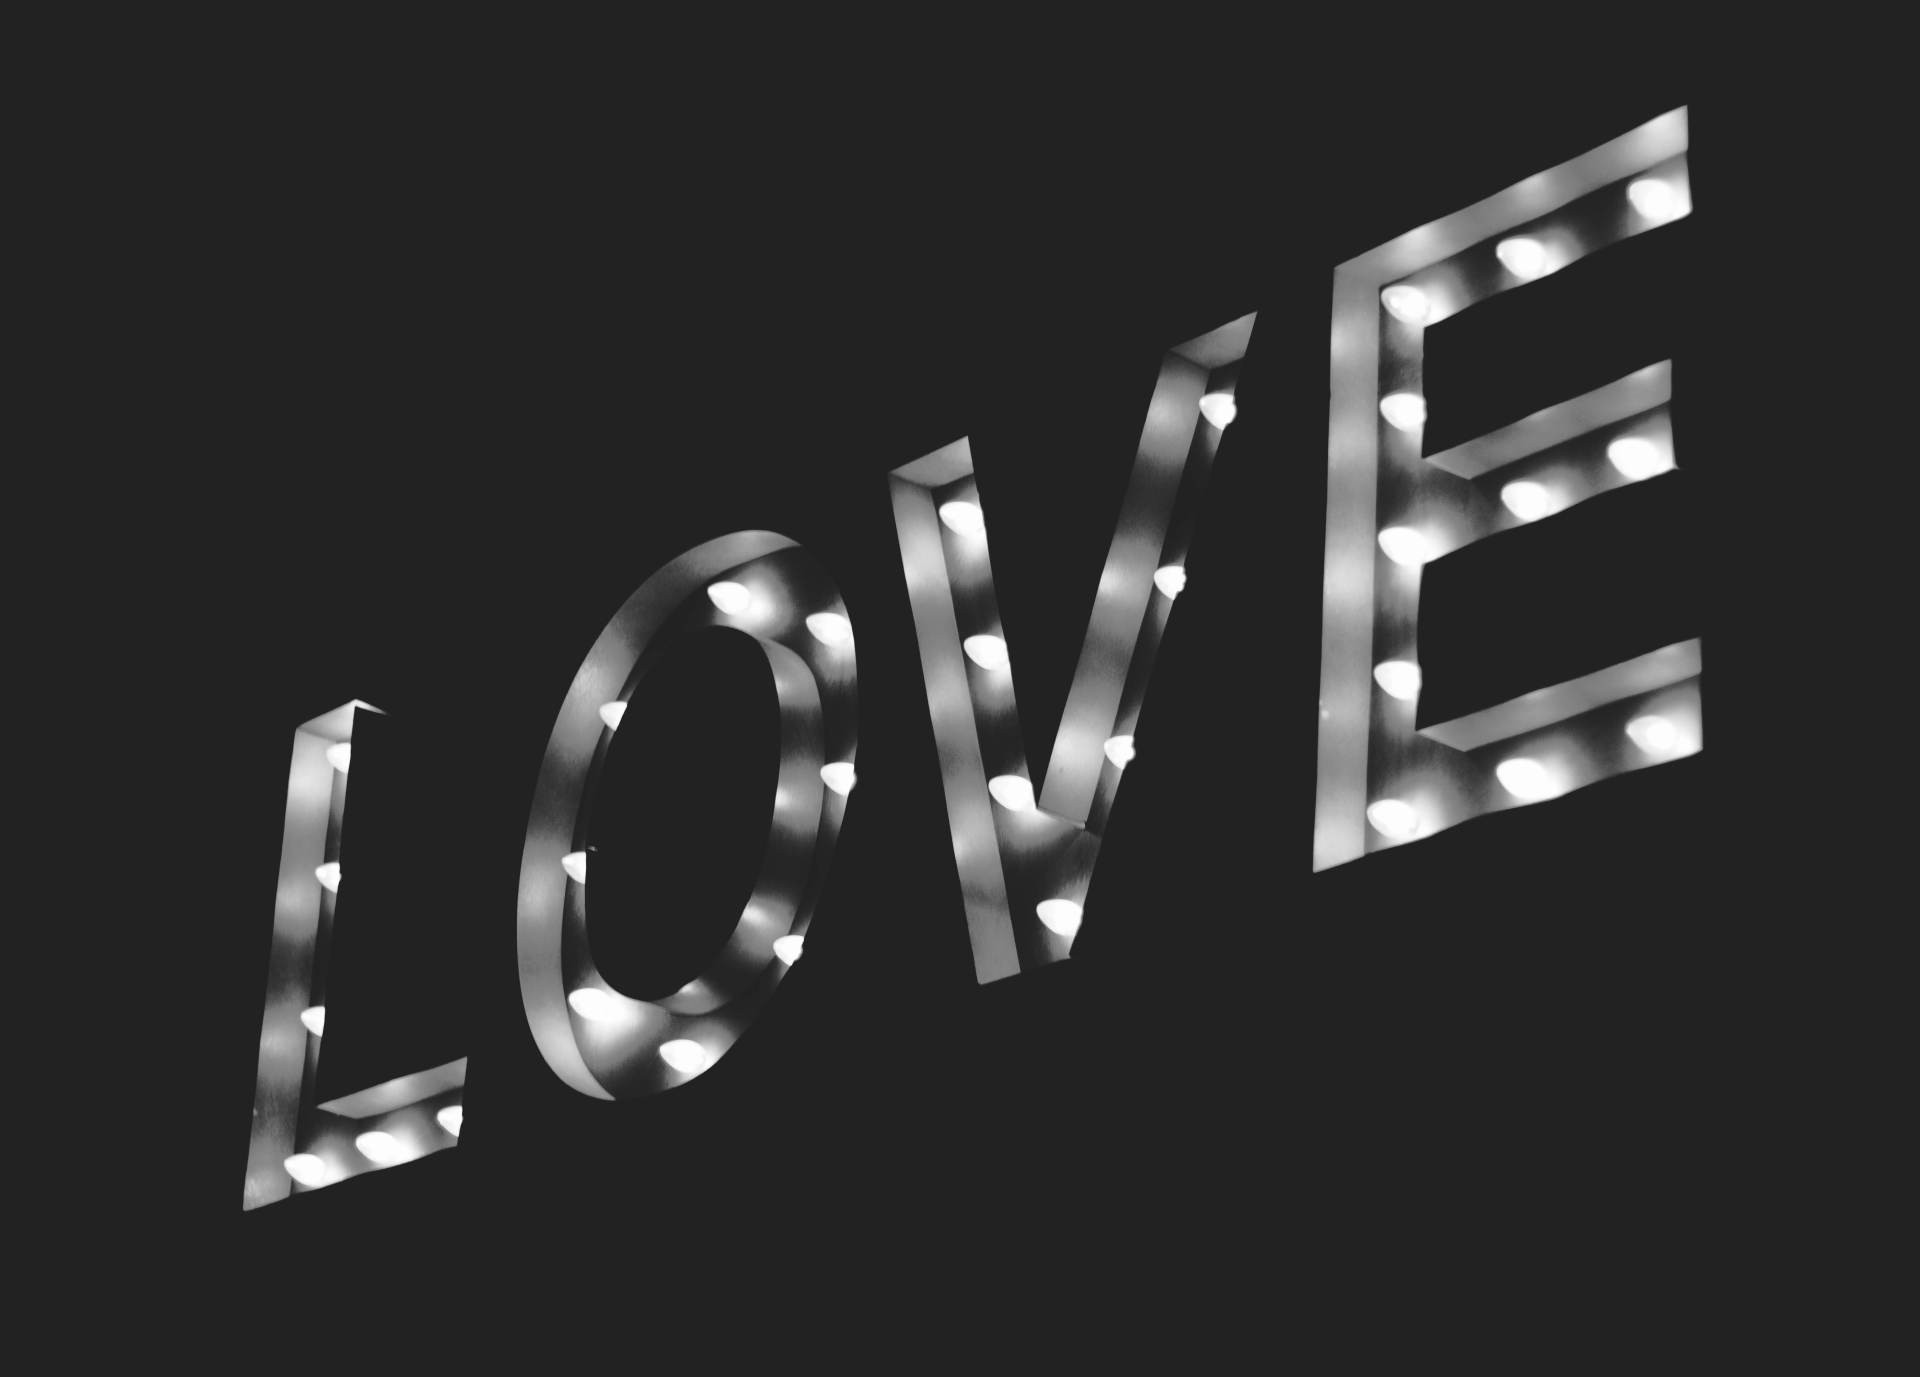 Ein beleuchtetes Schild mit dem Wort "LOVE" (Liebe) symbolisch für Liebe, sich lieben, Sex & Swinger